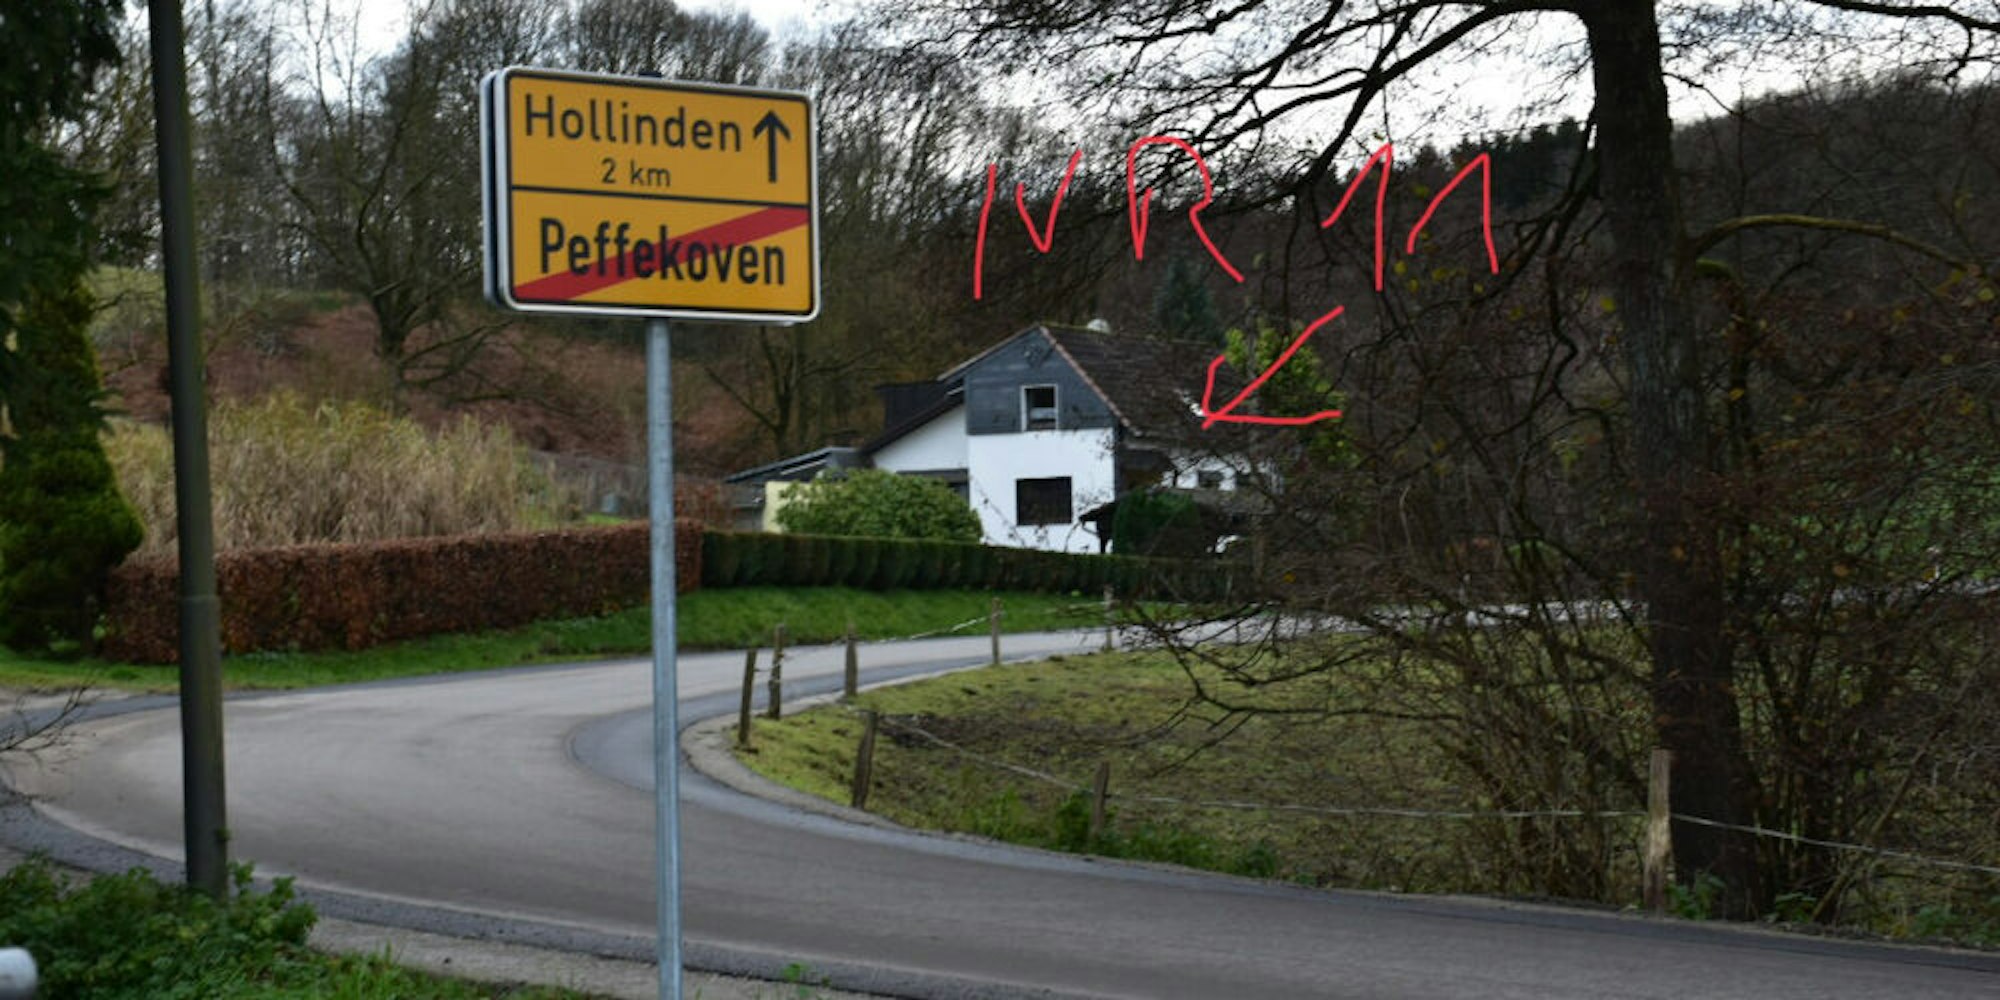 Die Lage seines Hauses hinter dem neuen Ortsausgangsschild von Peffekoven hat Leser Jörg Küpper gekennzeichnet.